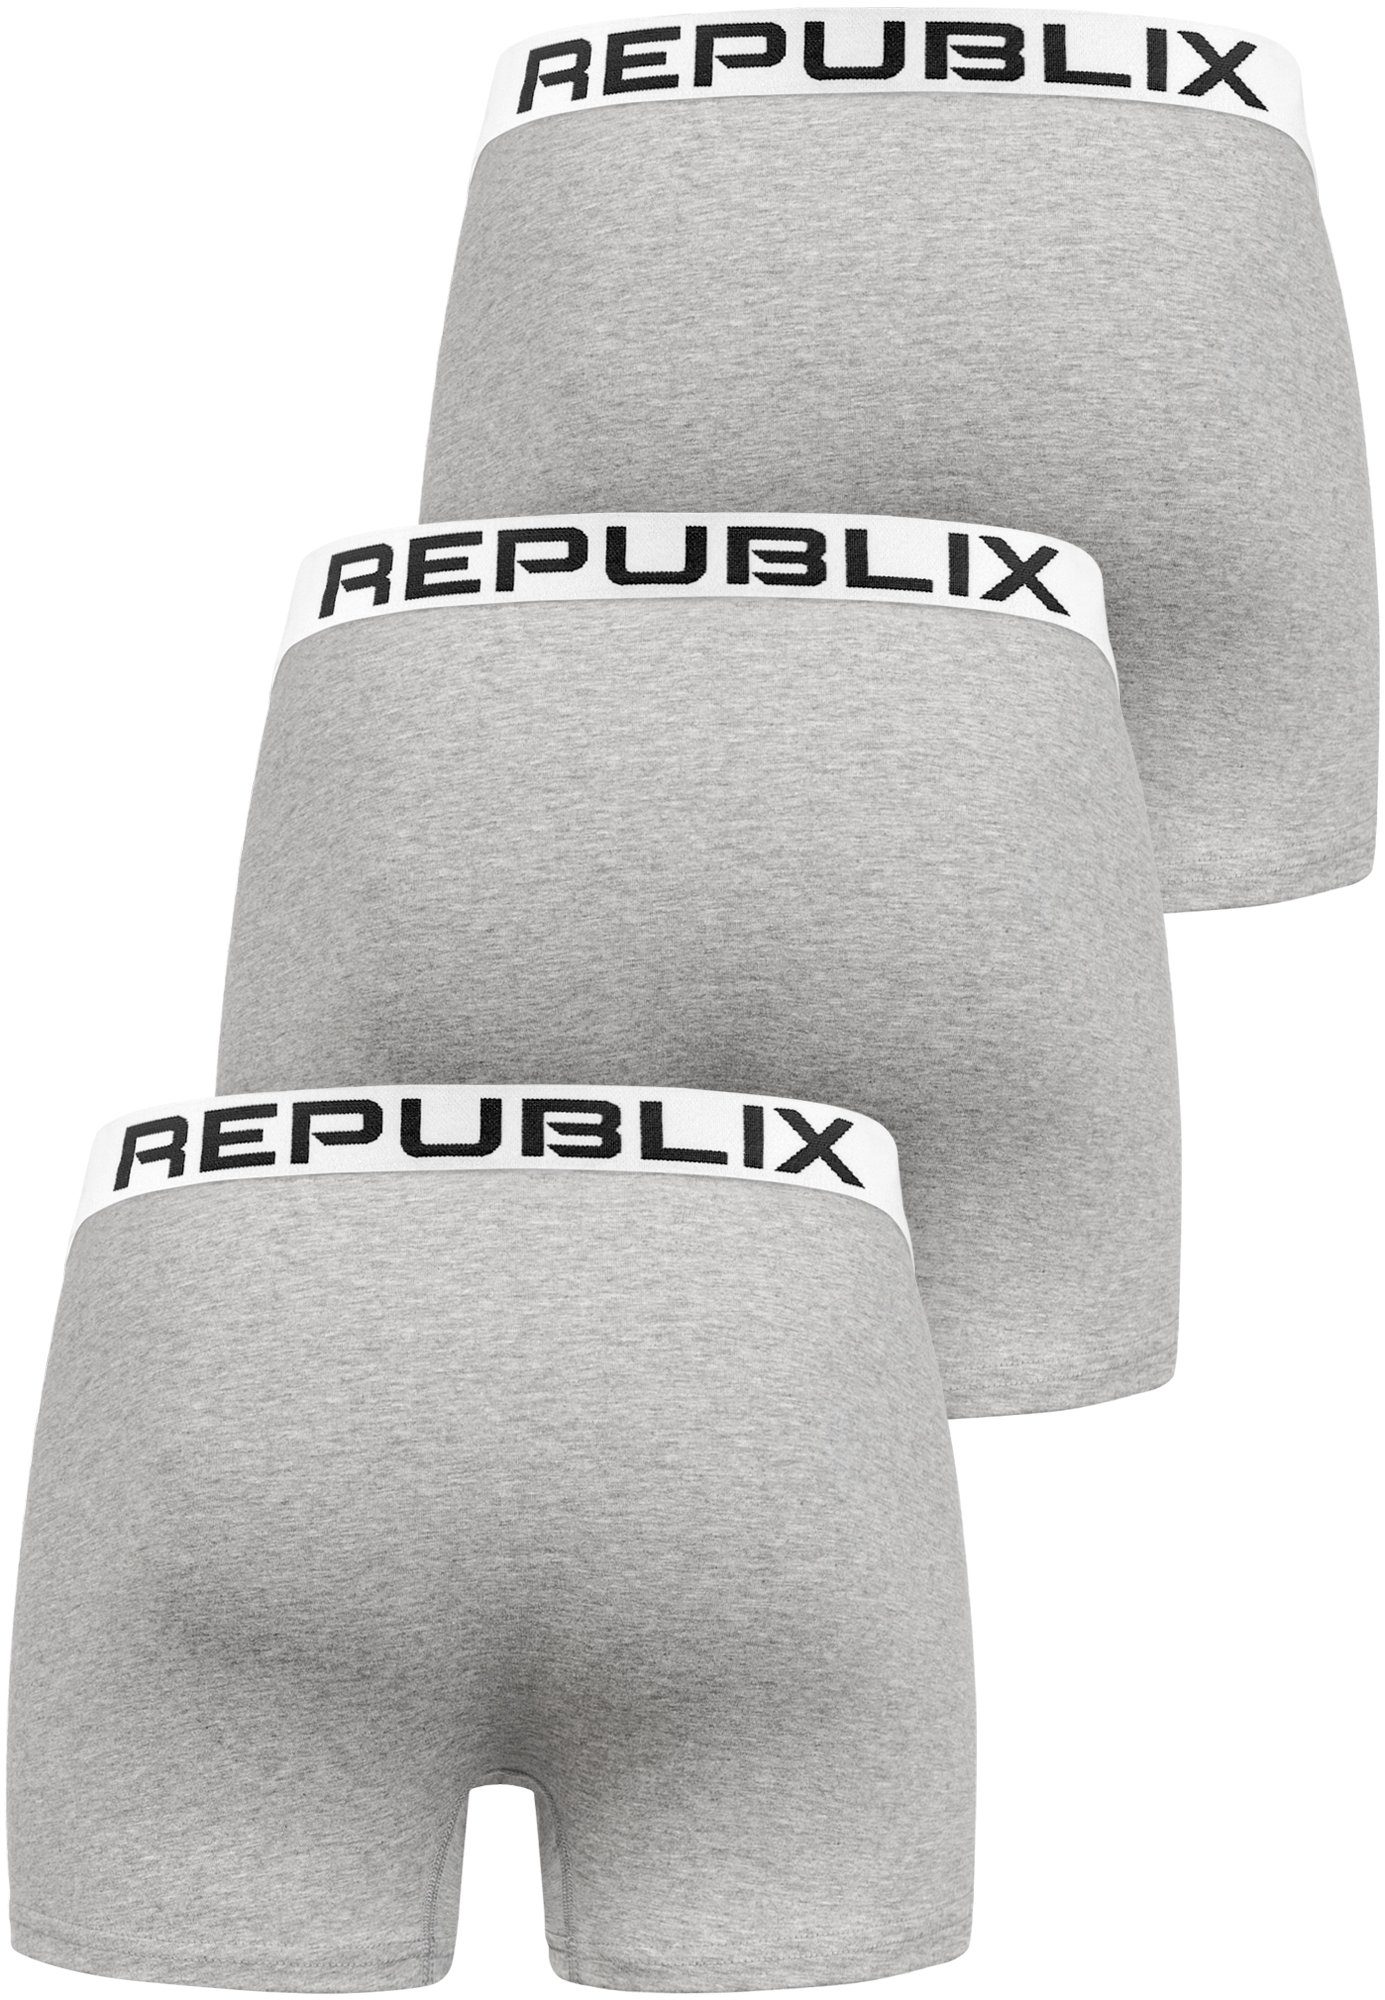 Boxershorts Baumwolle (3er-Pack) DON REPUBLIX Grau/Weiß Unterhose Herren Männer Unterwäsche